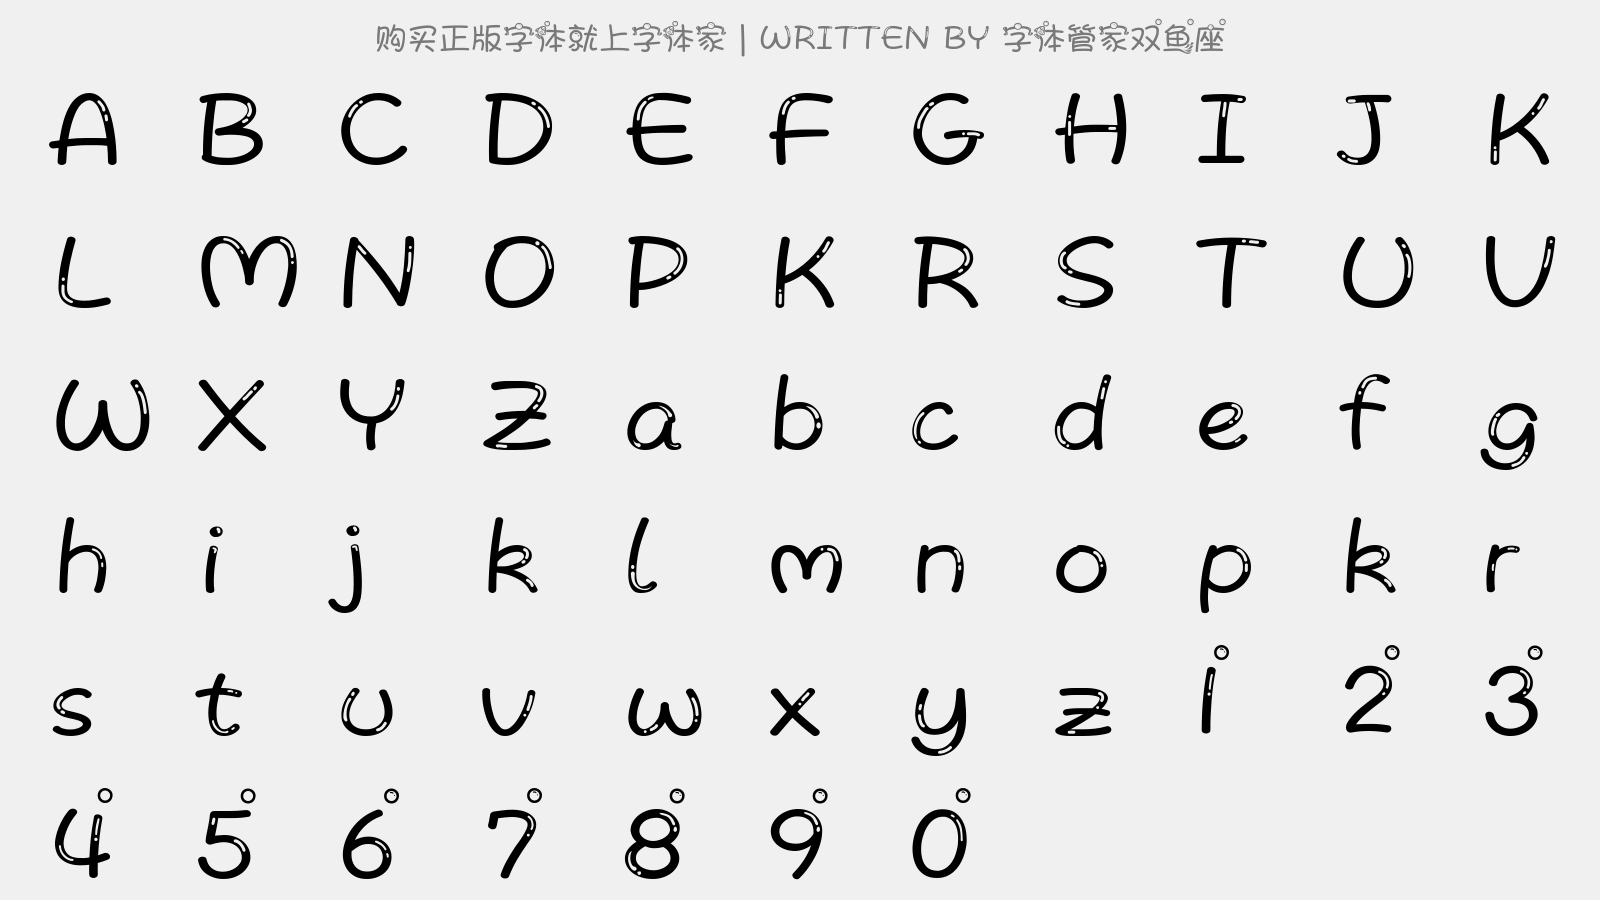 字体管家双鱼座 - 大写字母/小写字母/数字